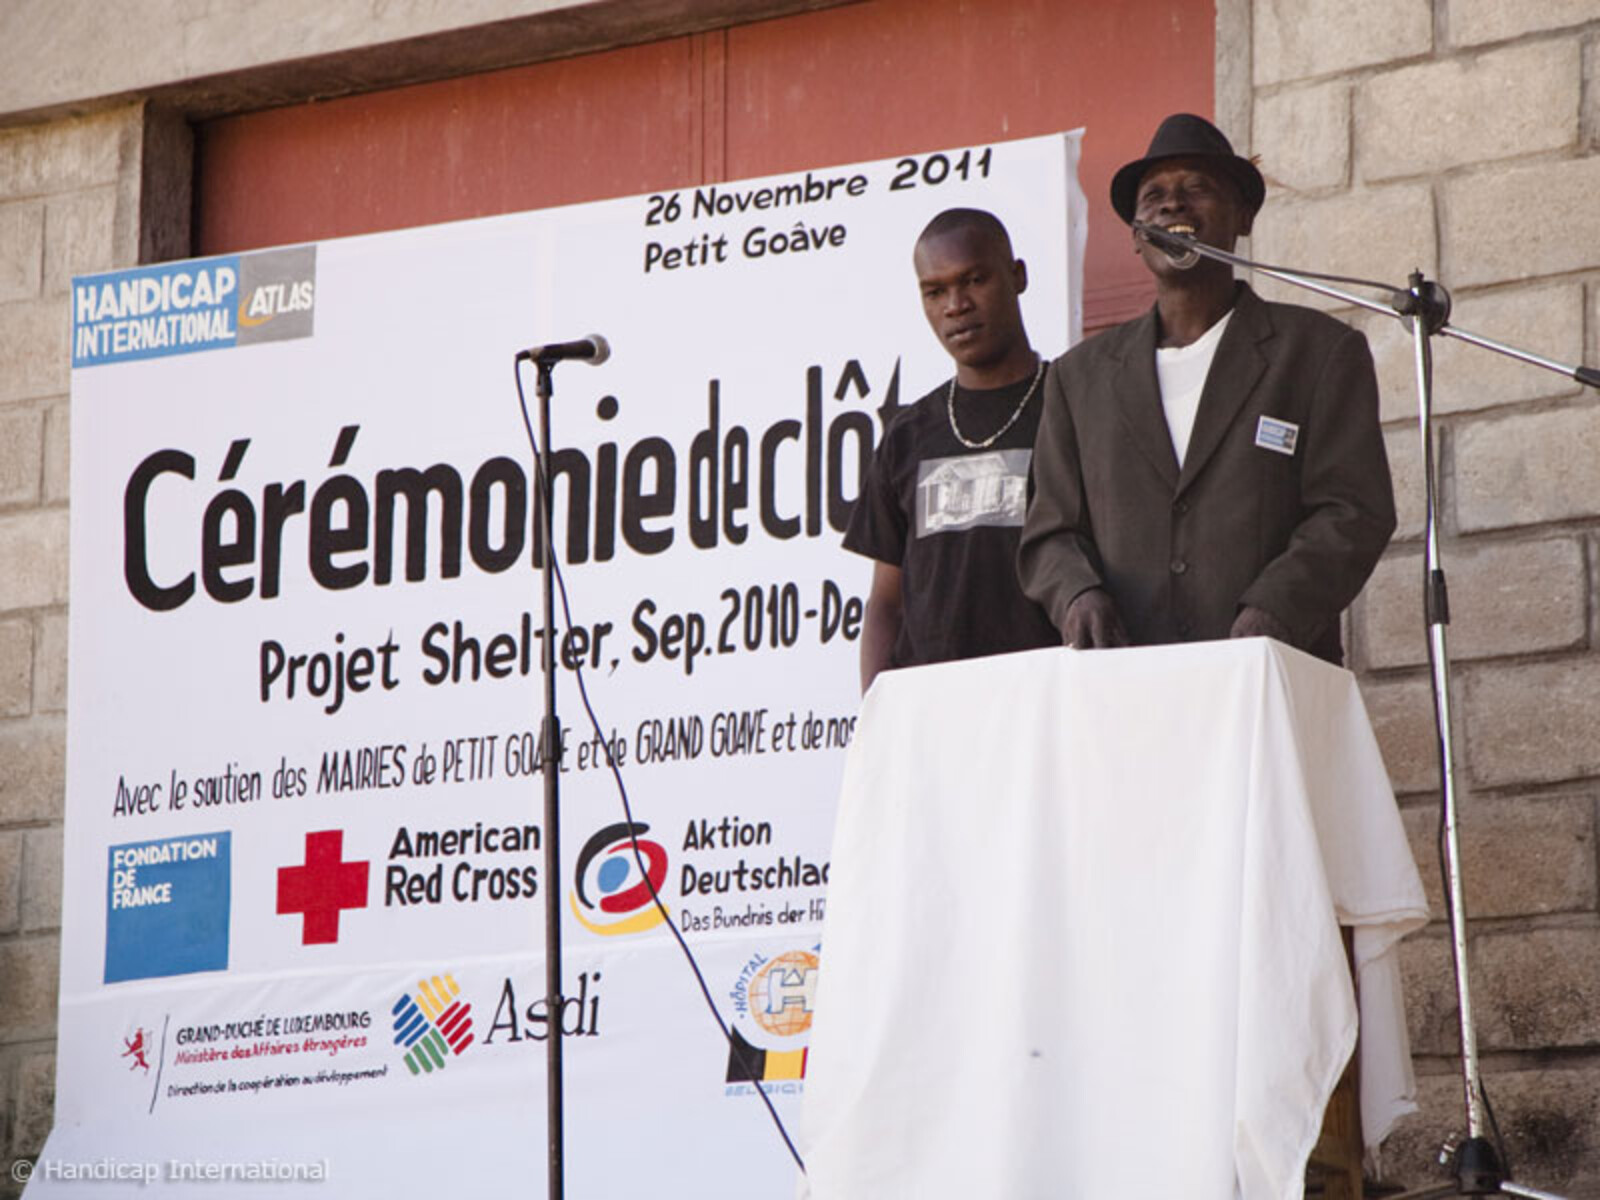 Abschluss des Bauprojektes von 1050 Sheltern, die Handicap International seit dem Beben in Gran Gôave und Petit Gôave errichtet hat